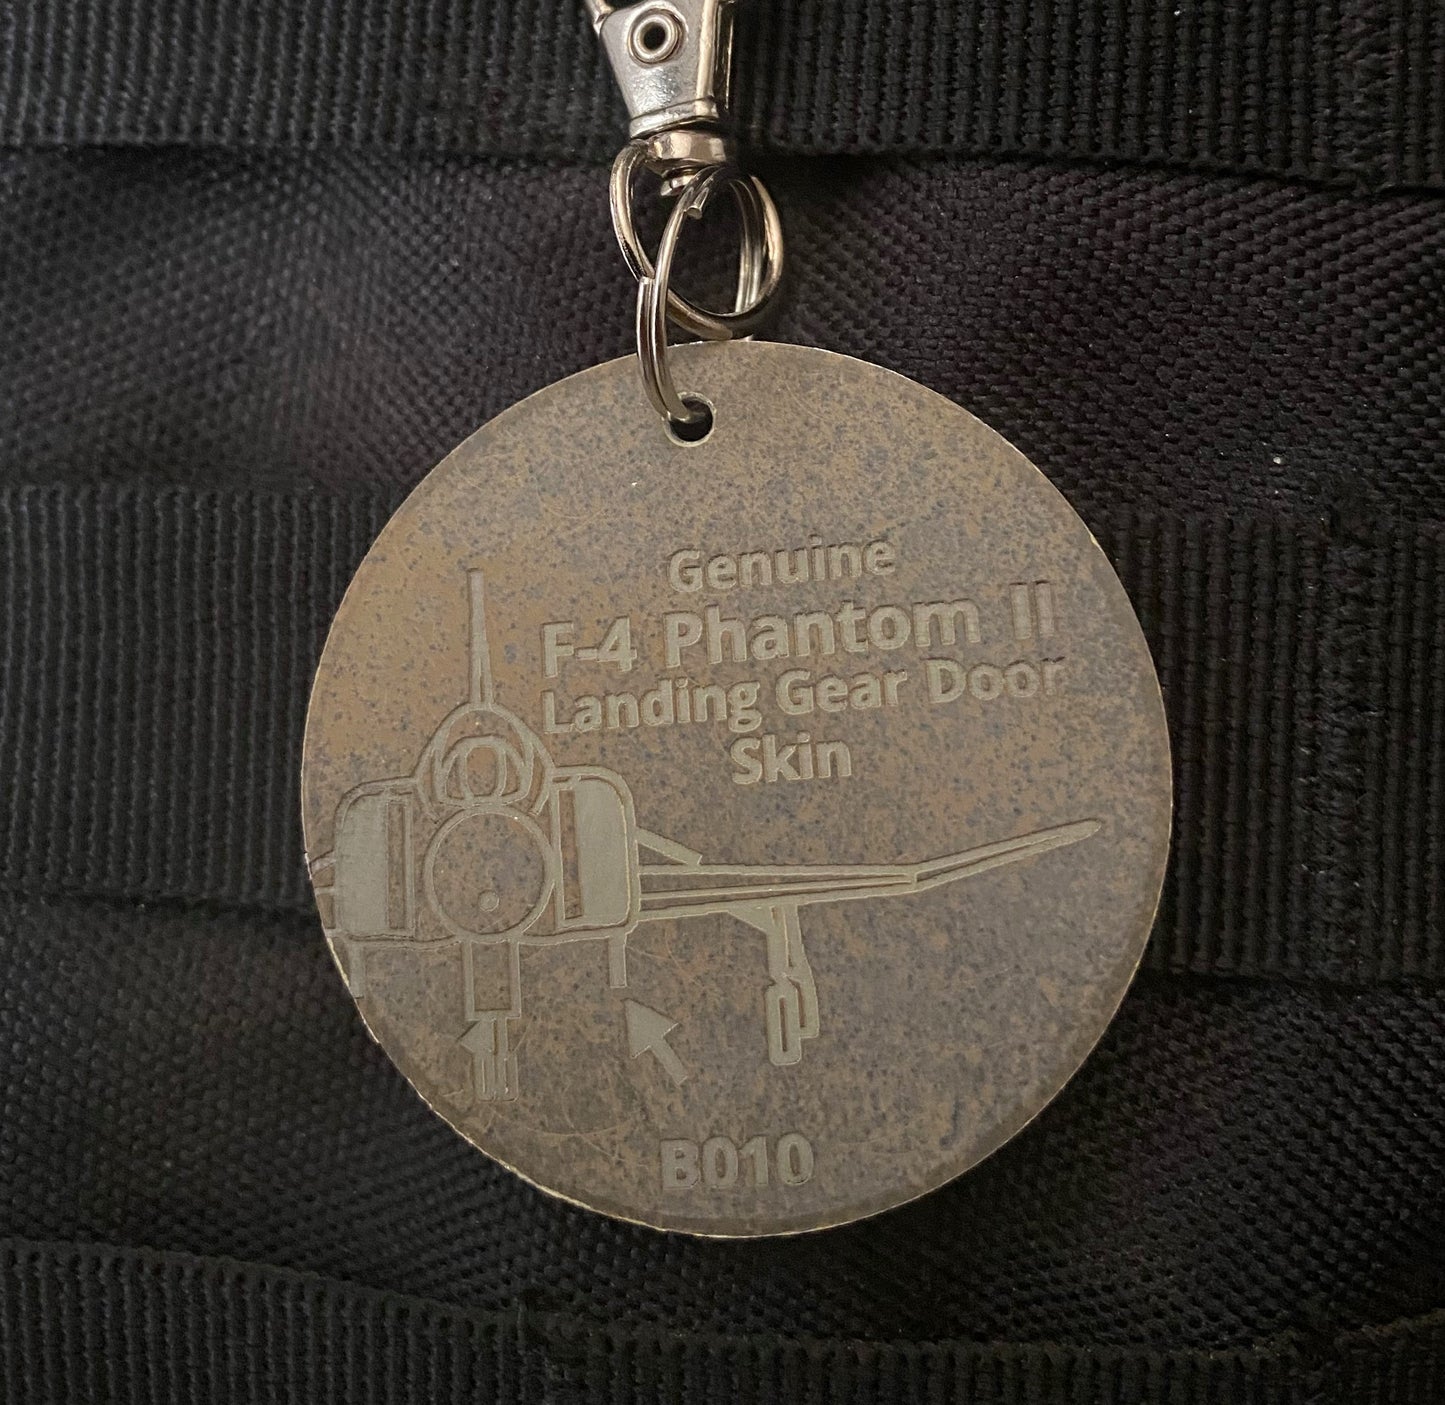 F-4 Phantom II Aircraft Skin Keychain/Luggage Tag - B010